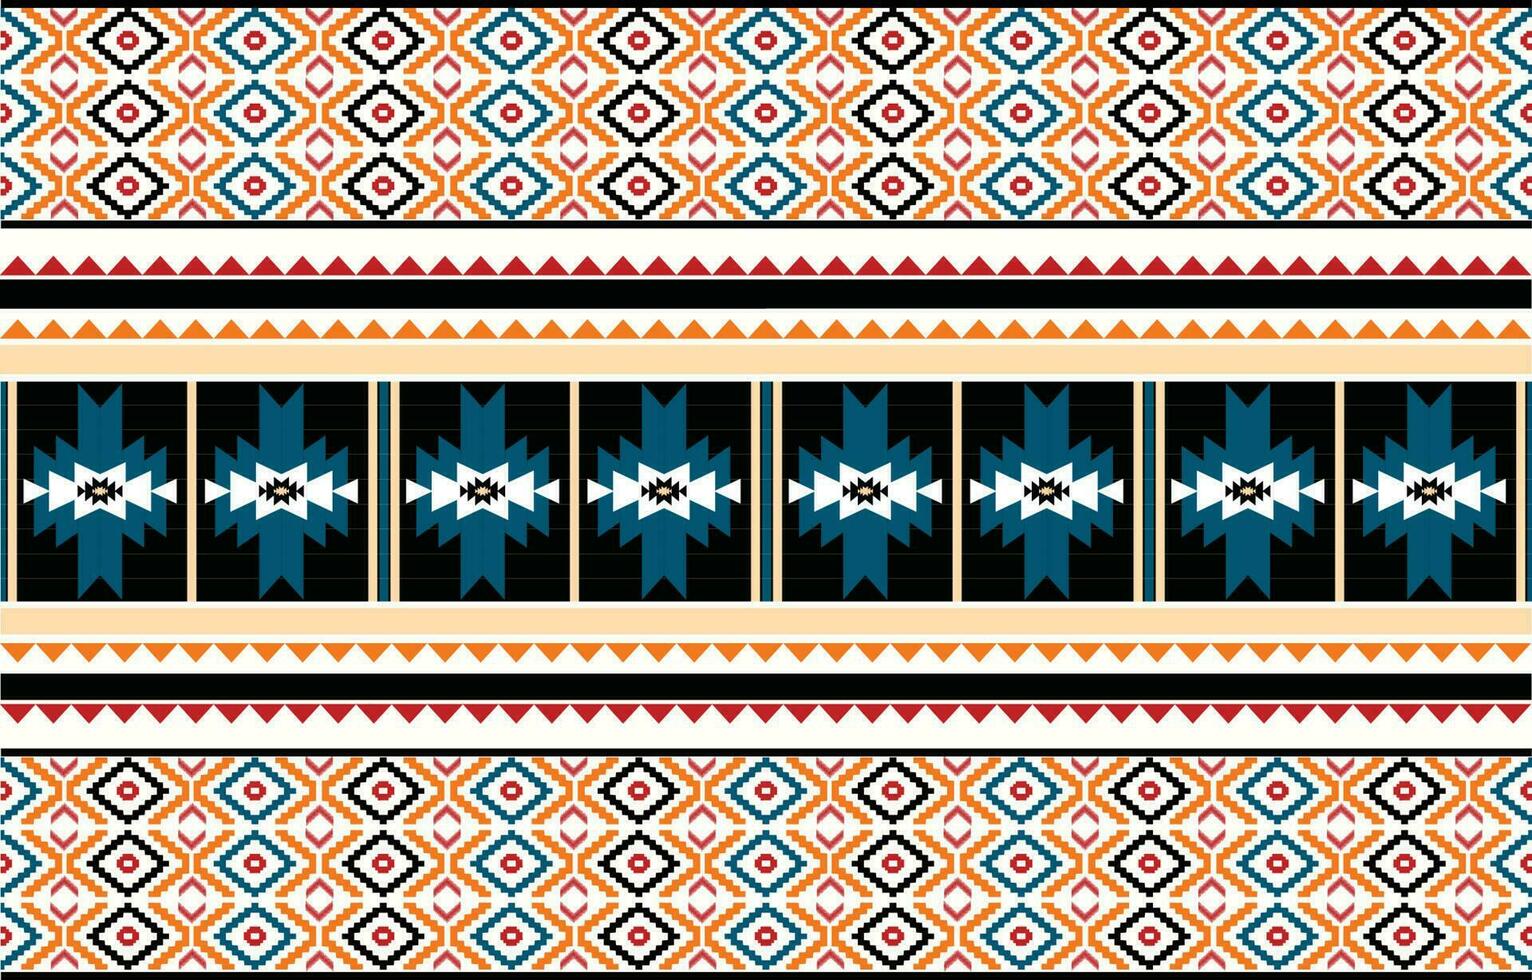 meetkundig etnisch patronen. Amerikaans, afrikaans,westers, azteeks, motief gestreept, en Boheems patroon stijlen. ontworpen voor achtergrond, behang, afdrukken, tapijt, inpakken, tegel, salong, batik.vector illustratie vector